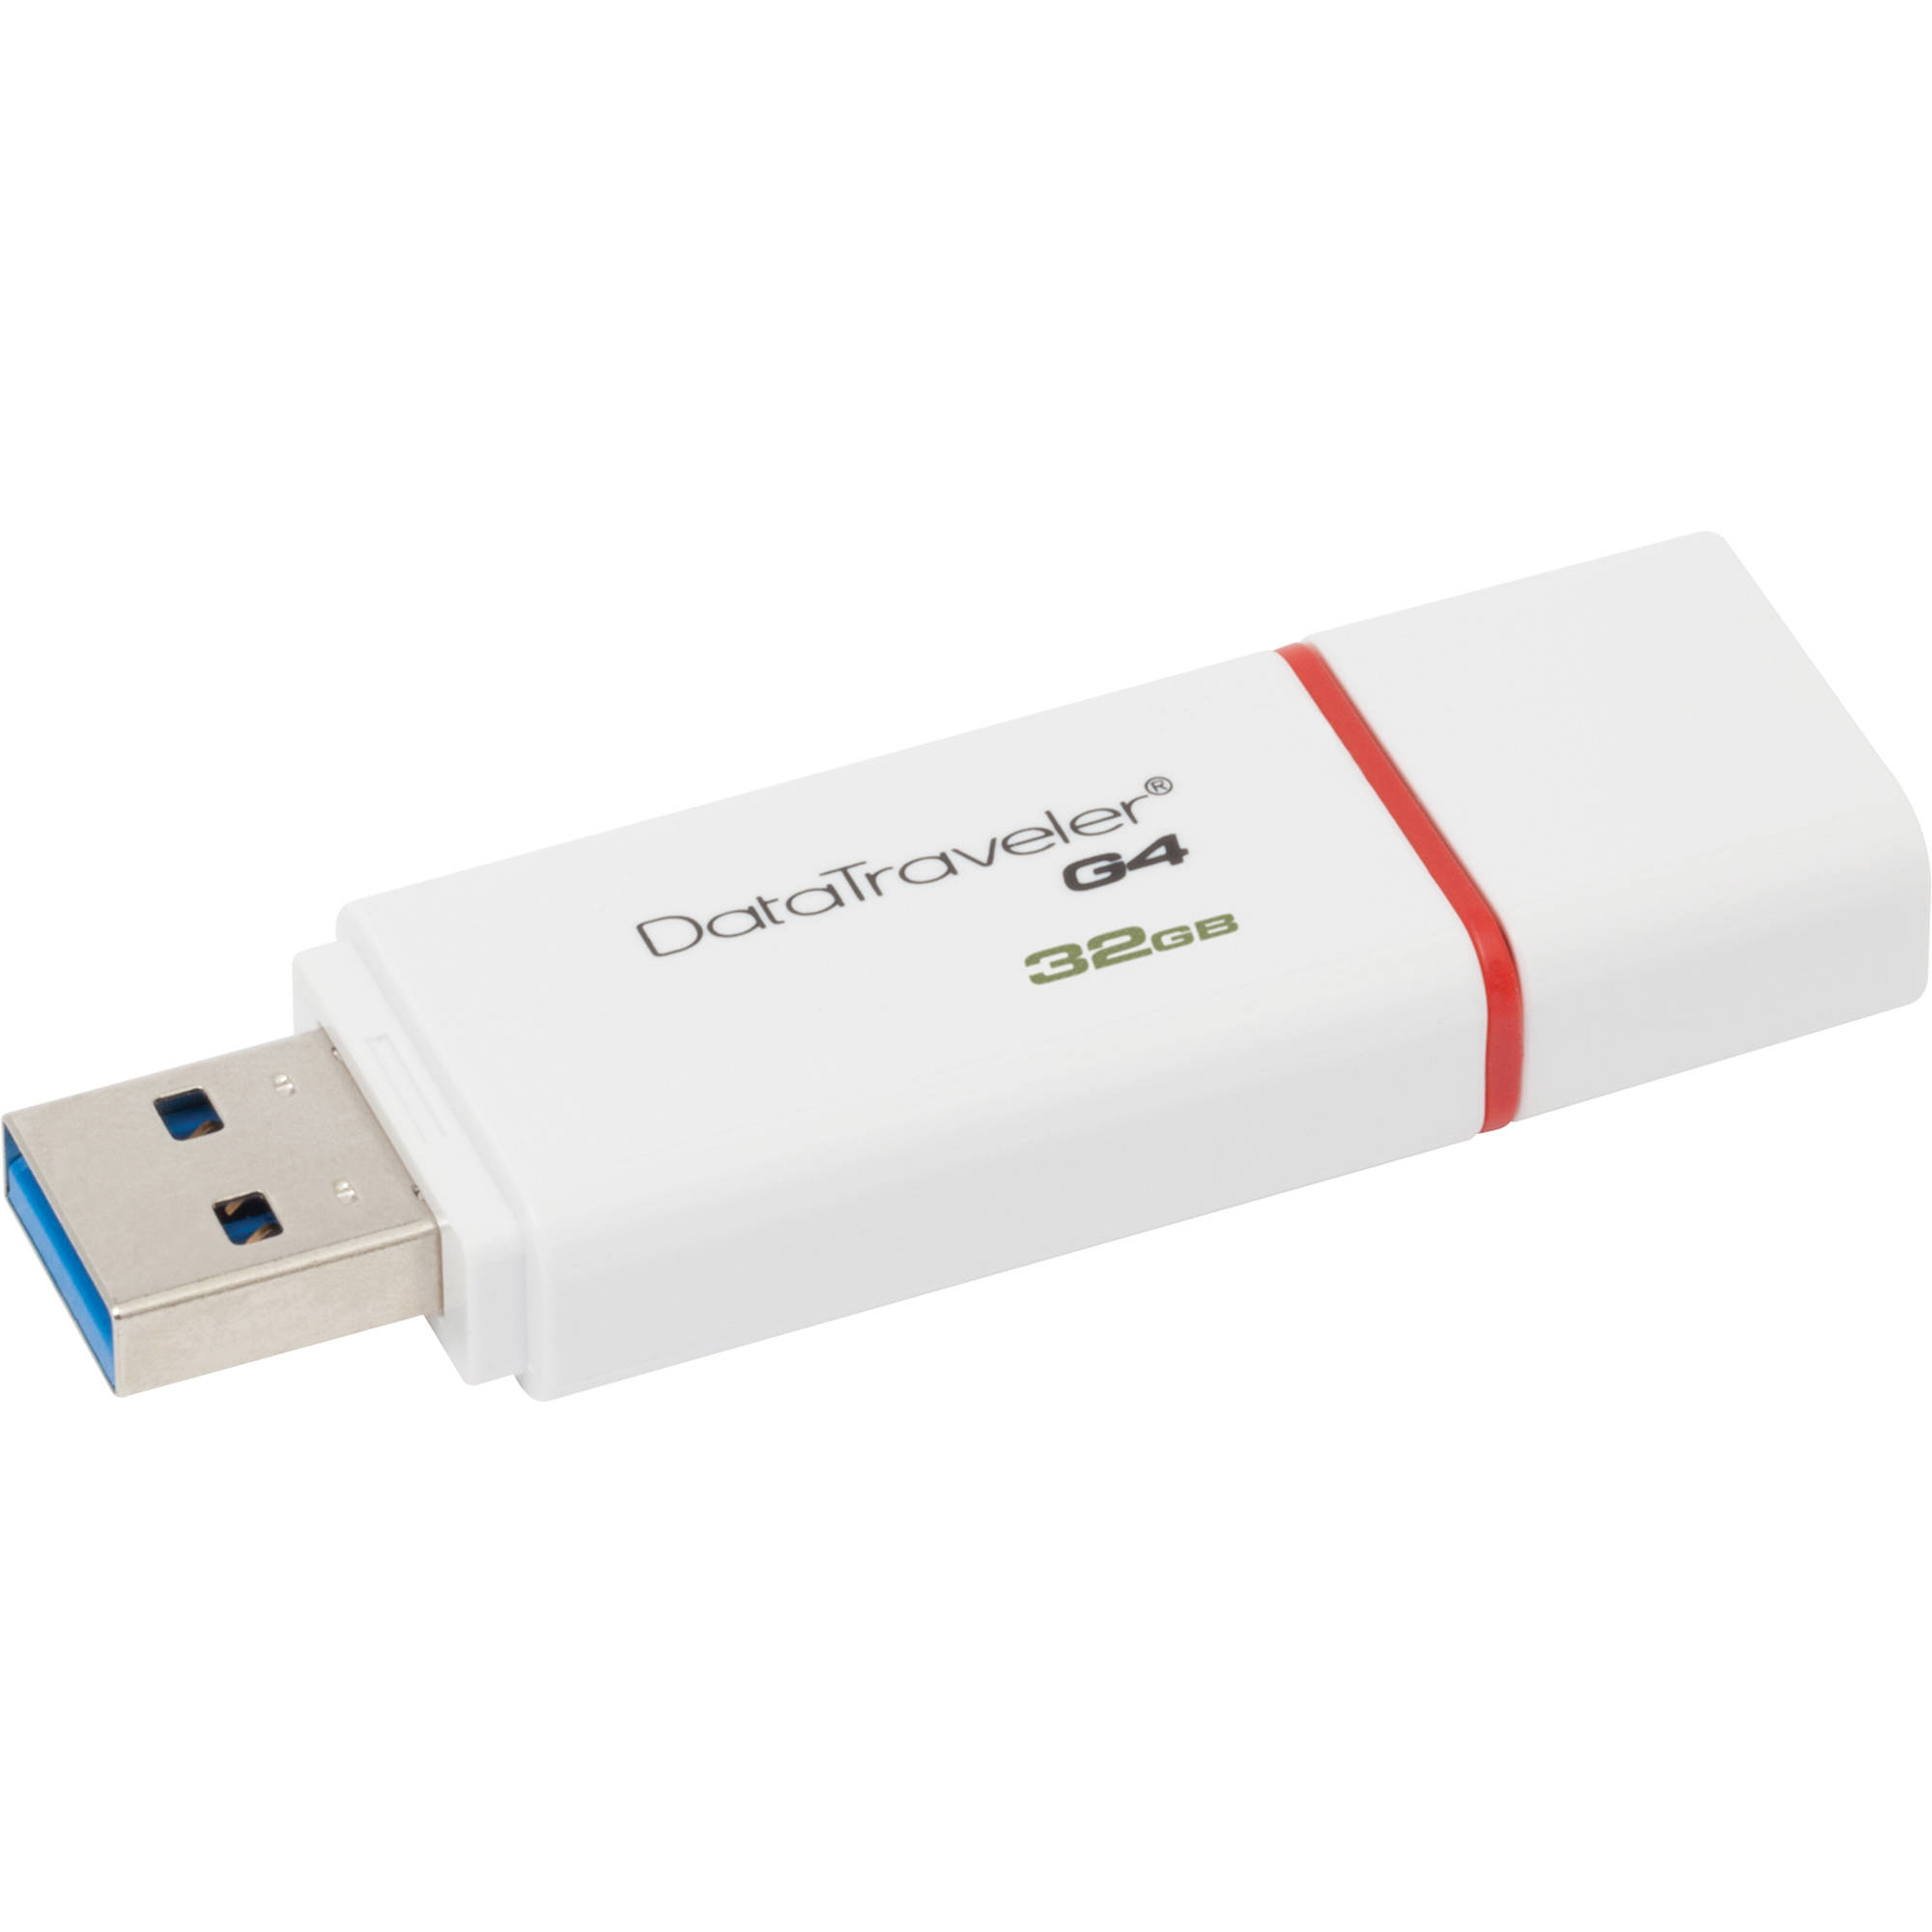 Data Traveler G4 USB 3.0 32GB White-Red Kingston DTIG4/32GB image